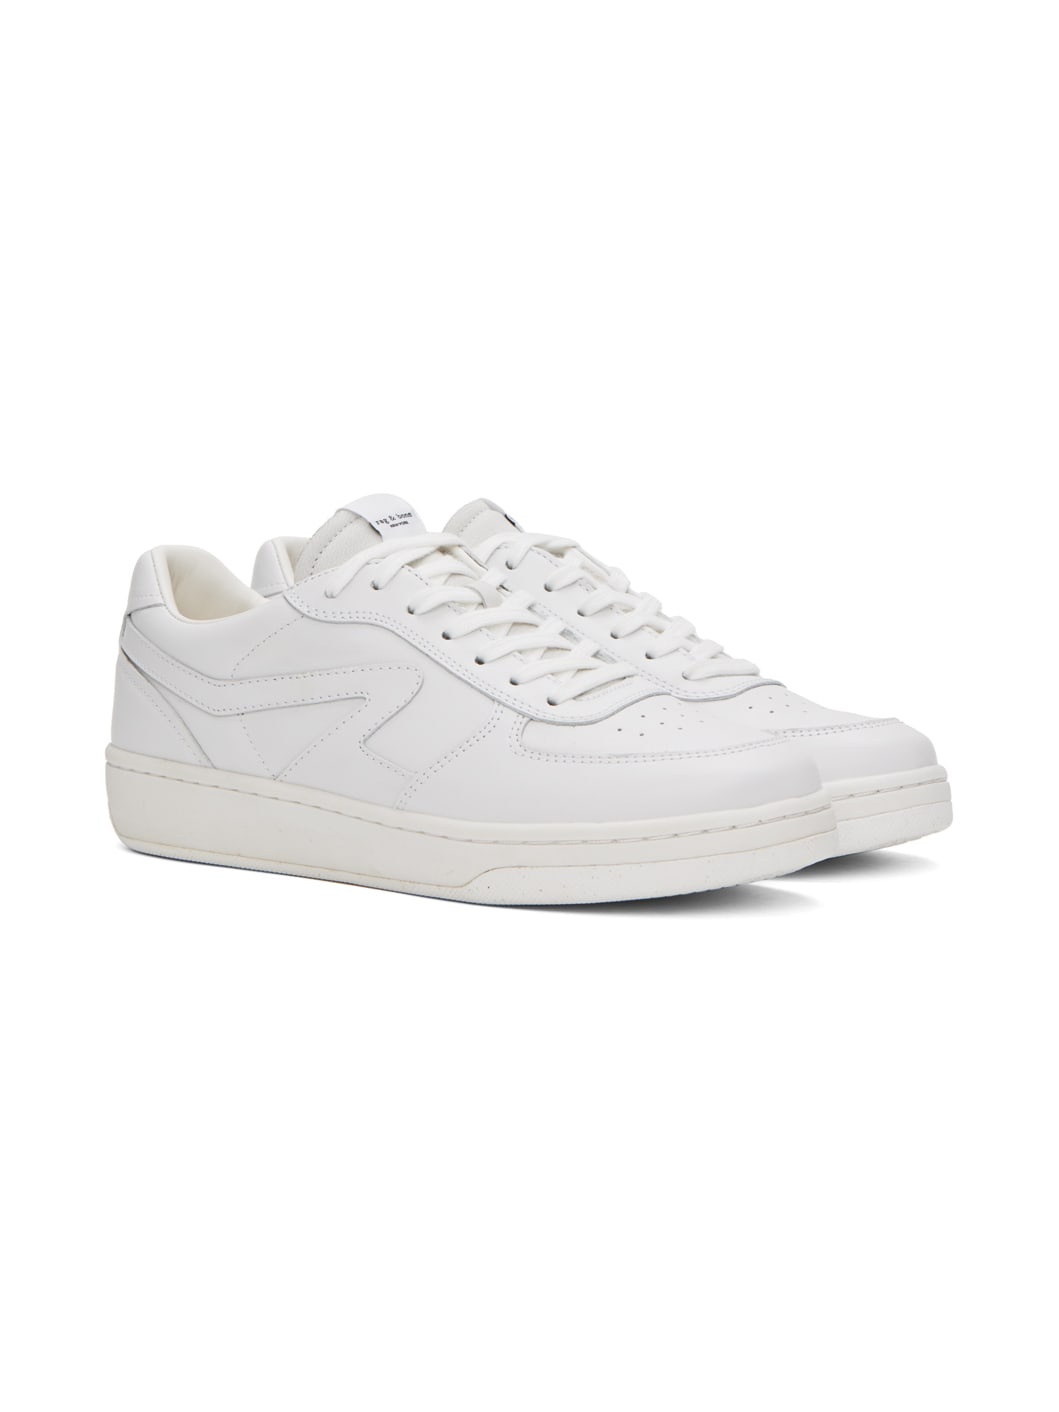 White Retro Court Sneakers - 4